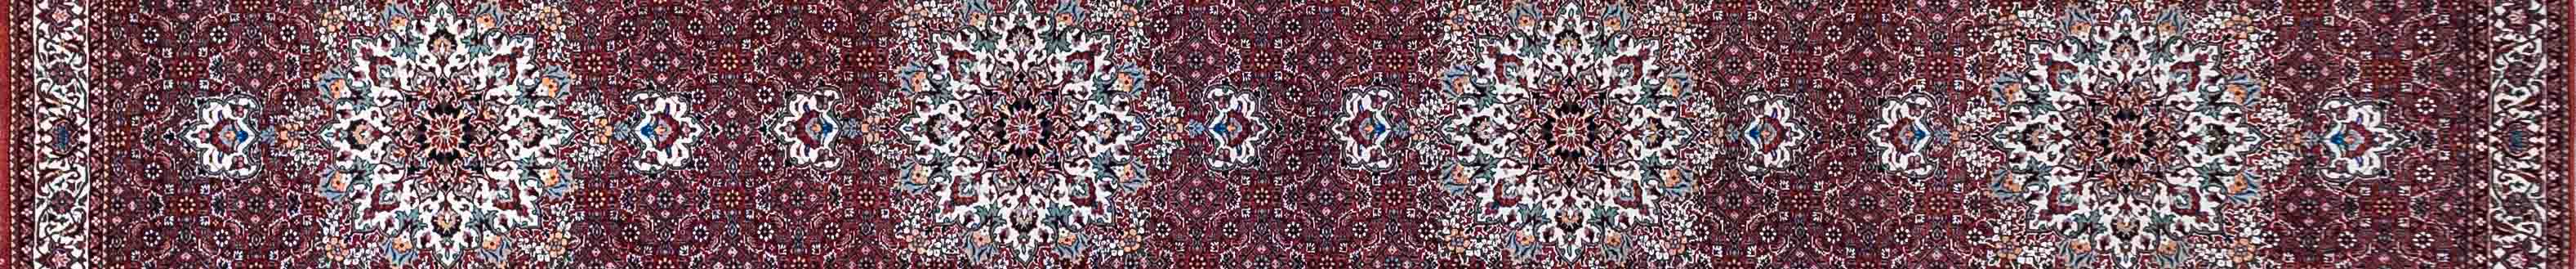 Bidjar Persian Carpet Rug N1Carpet Canada Montreal Tapis Persan 3950